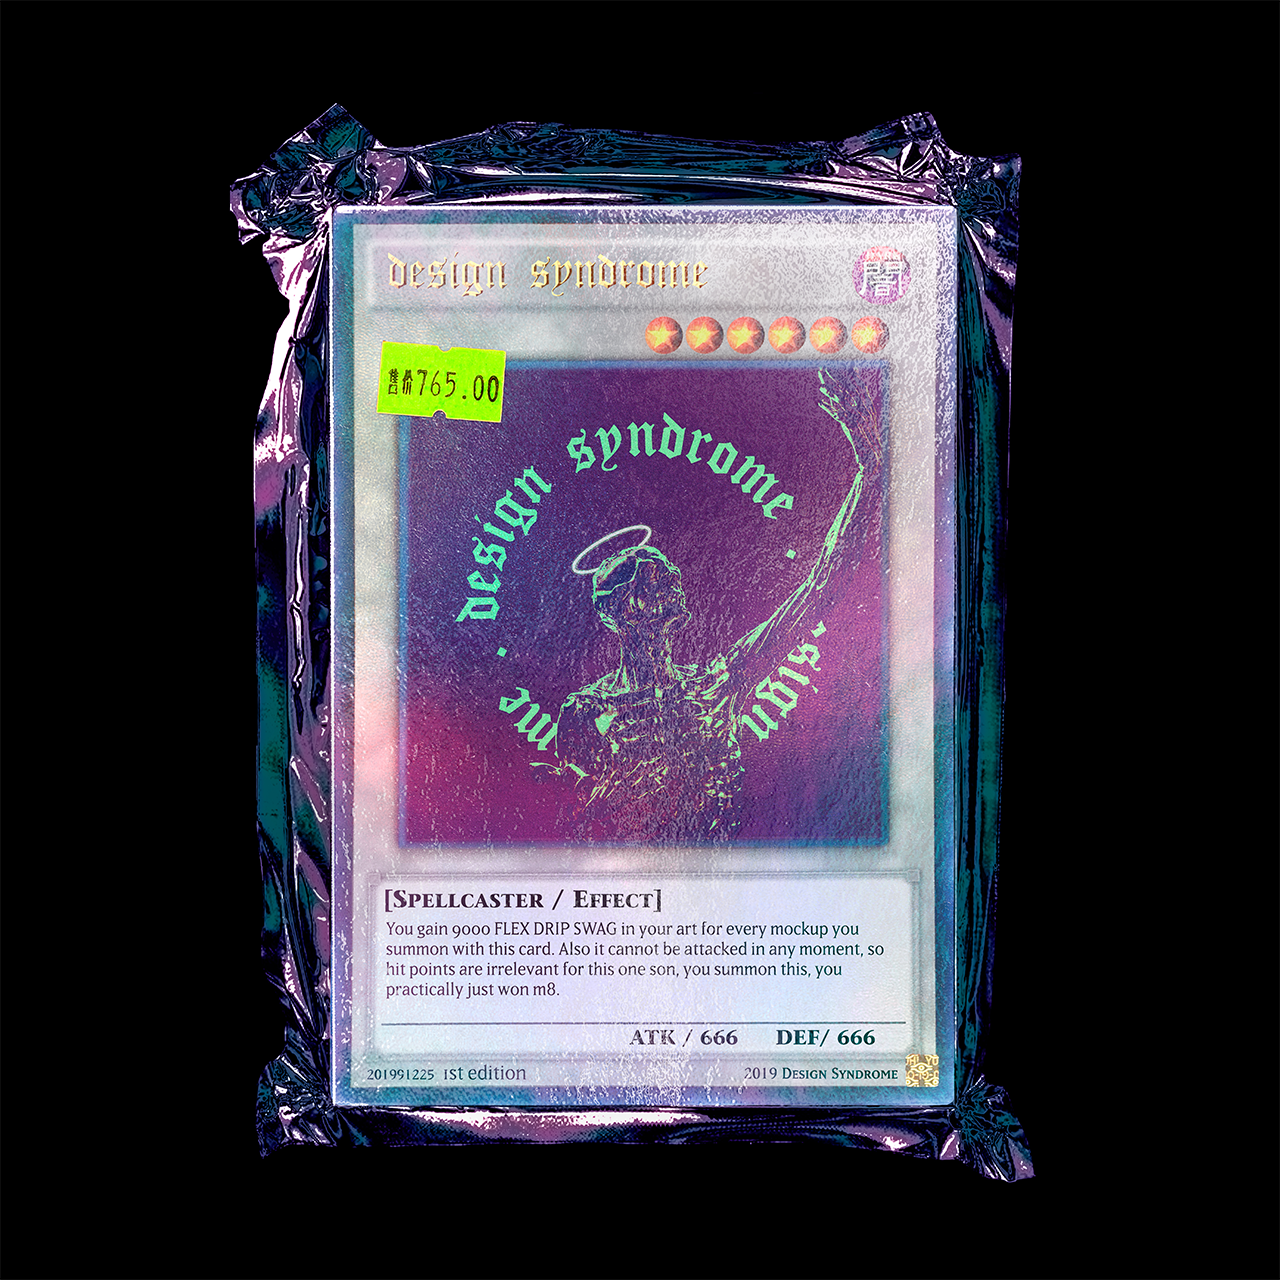 塑料真空塑封卡片包装袋设计贴图PSD样机模板 Yu-Gi Card Mockup